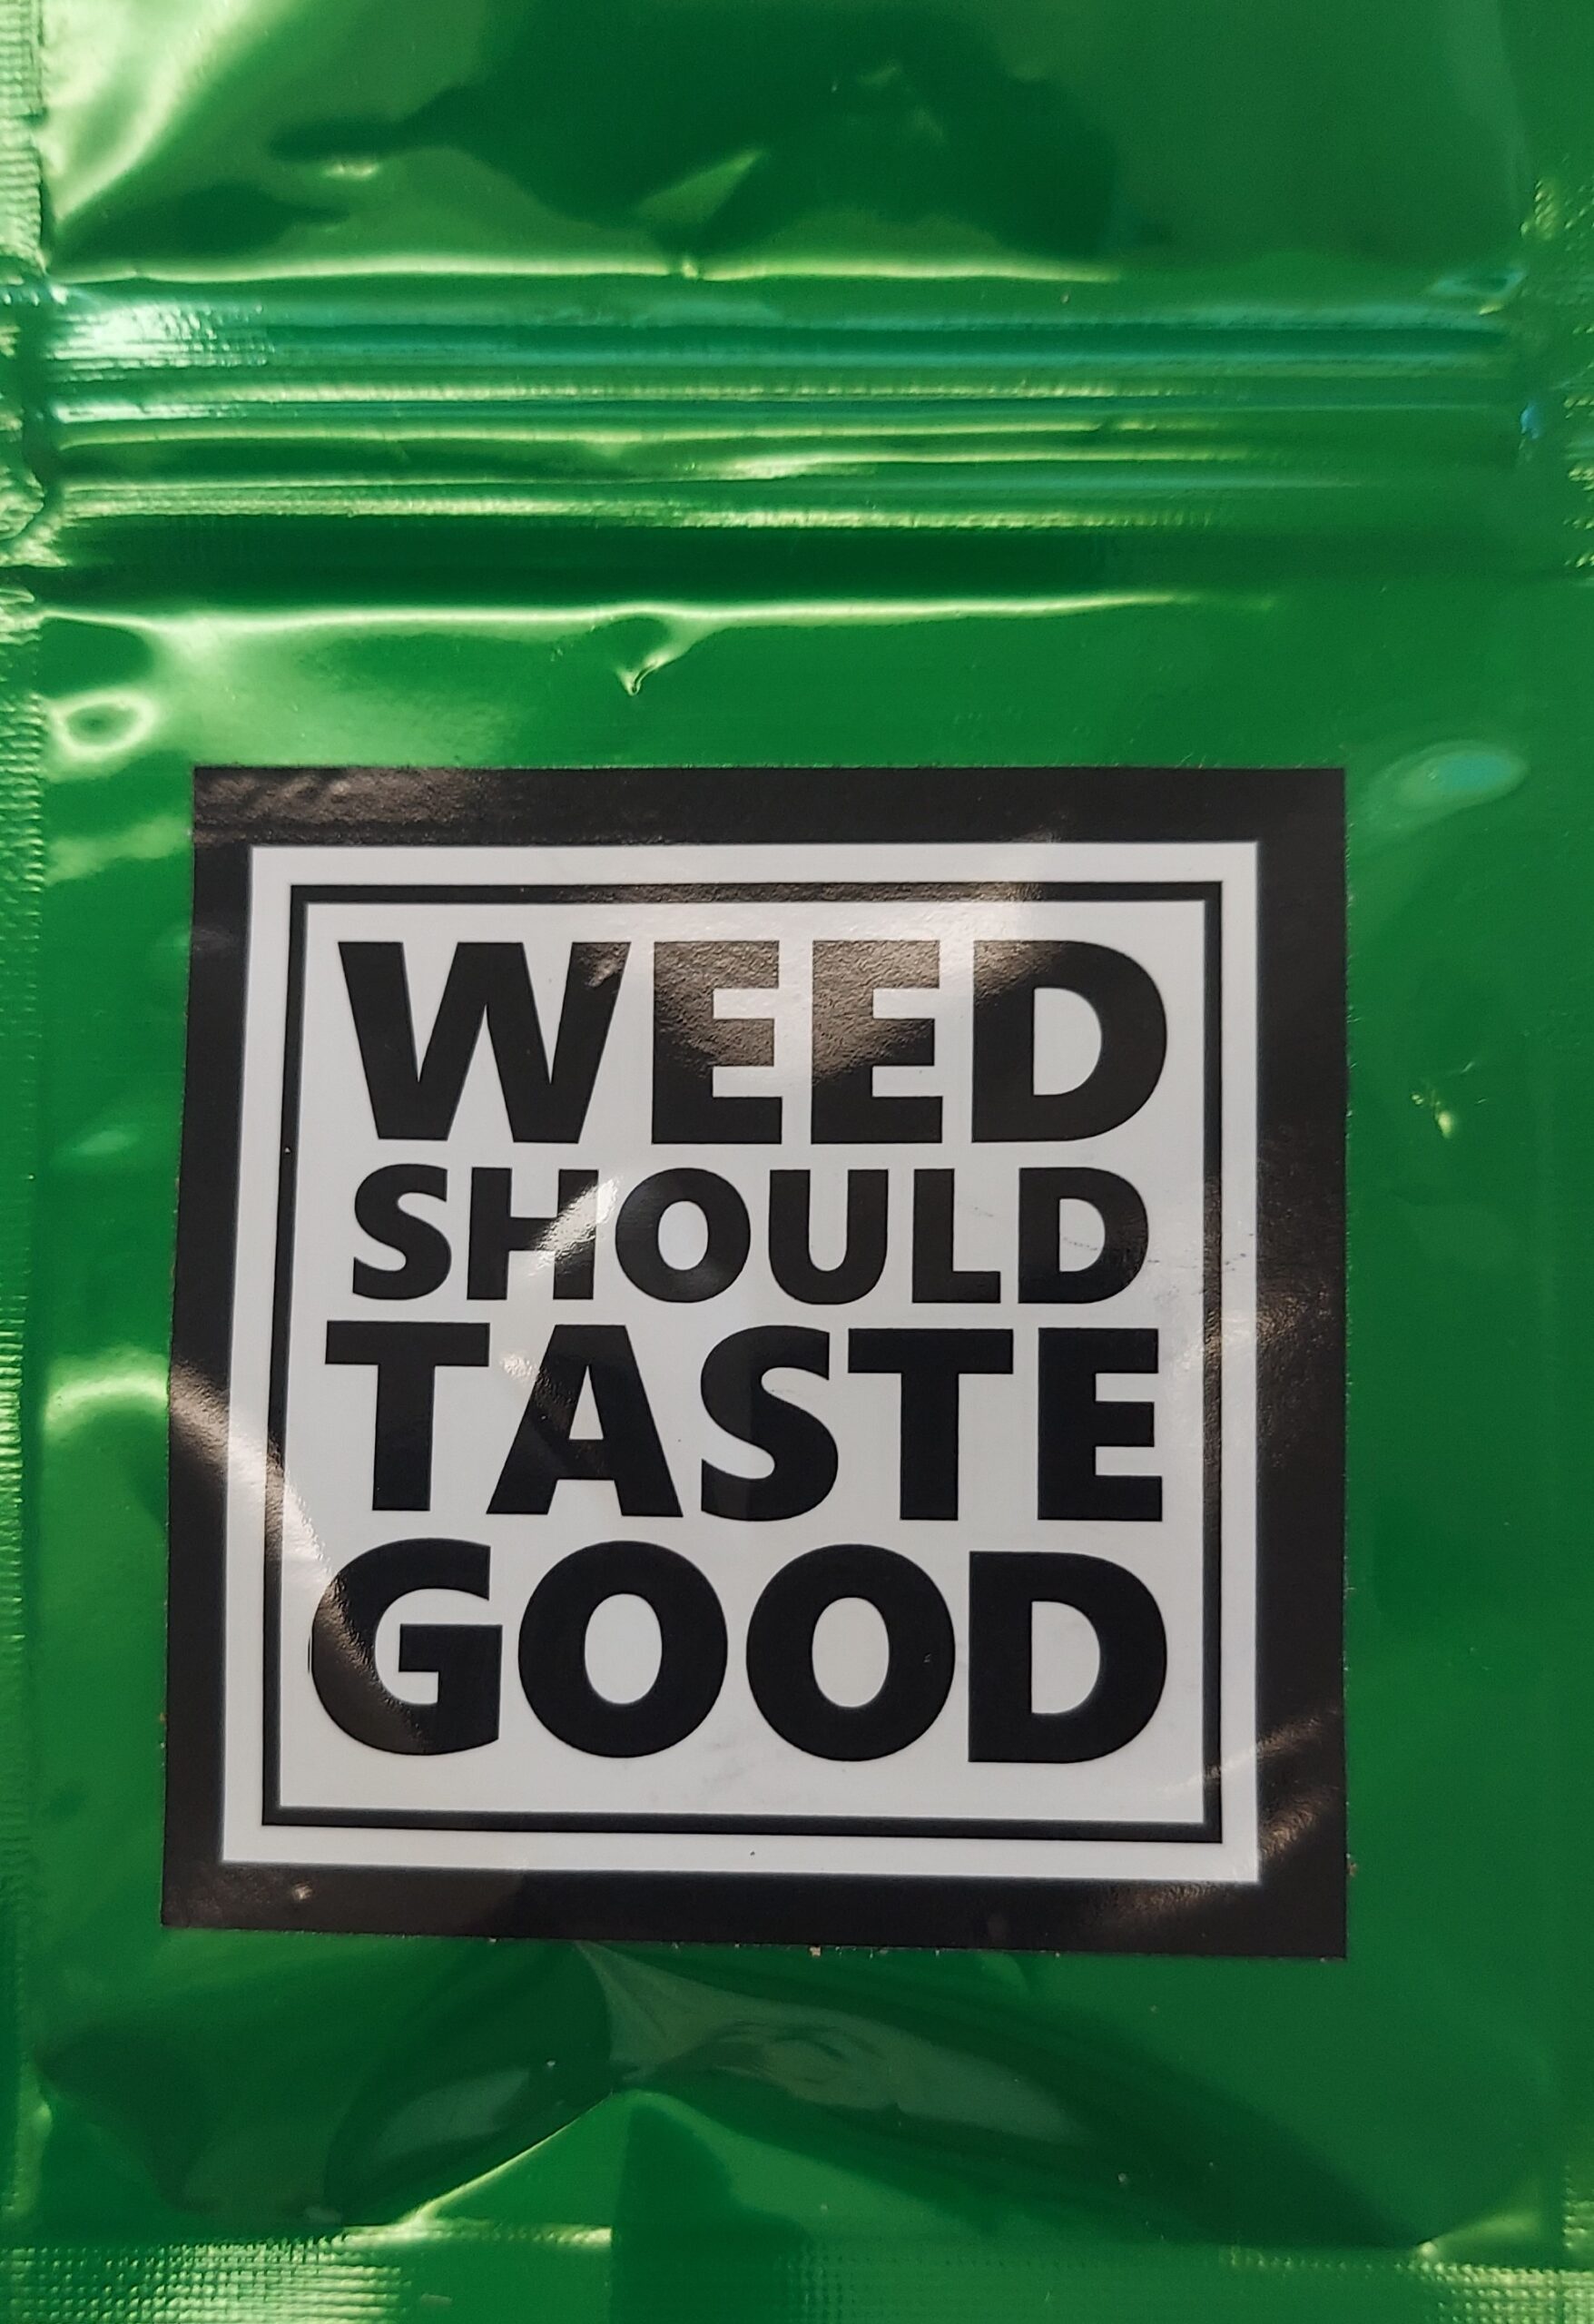 Weed Should Taste Good – Service Dog CBD